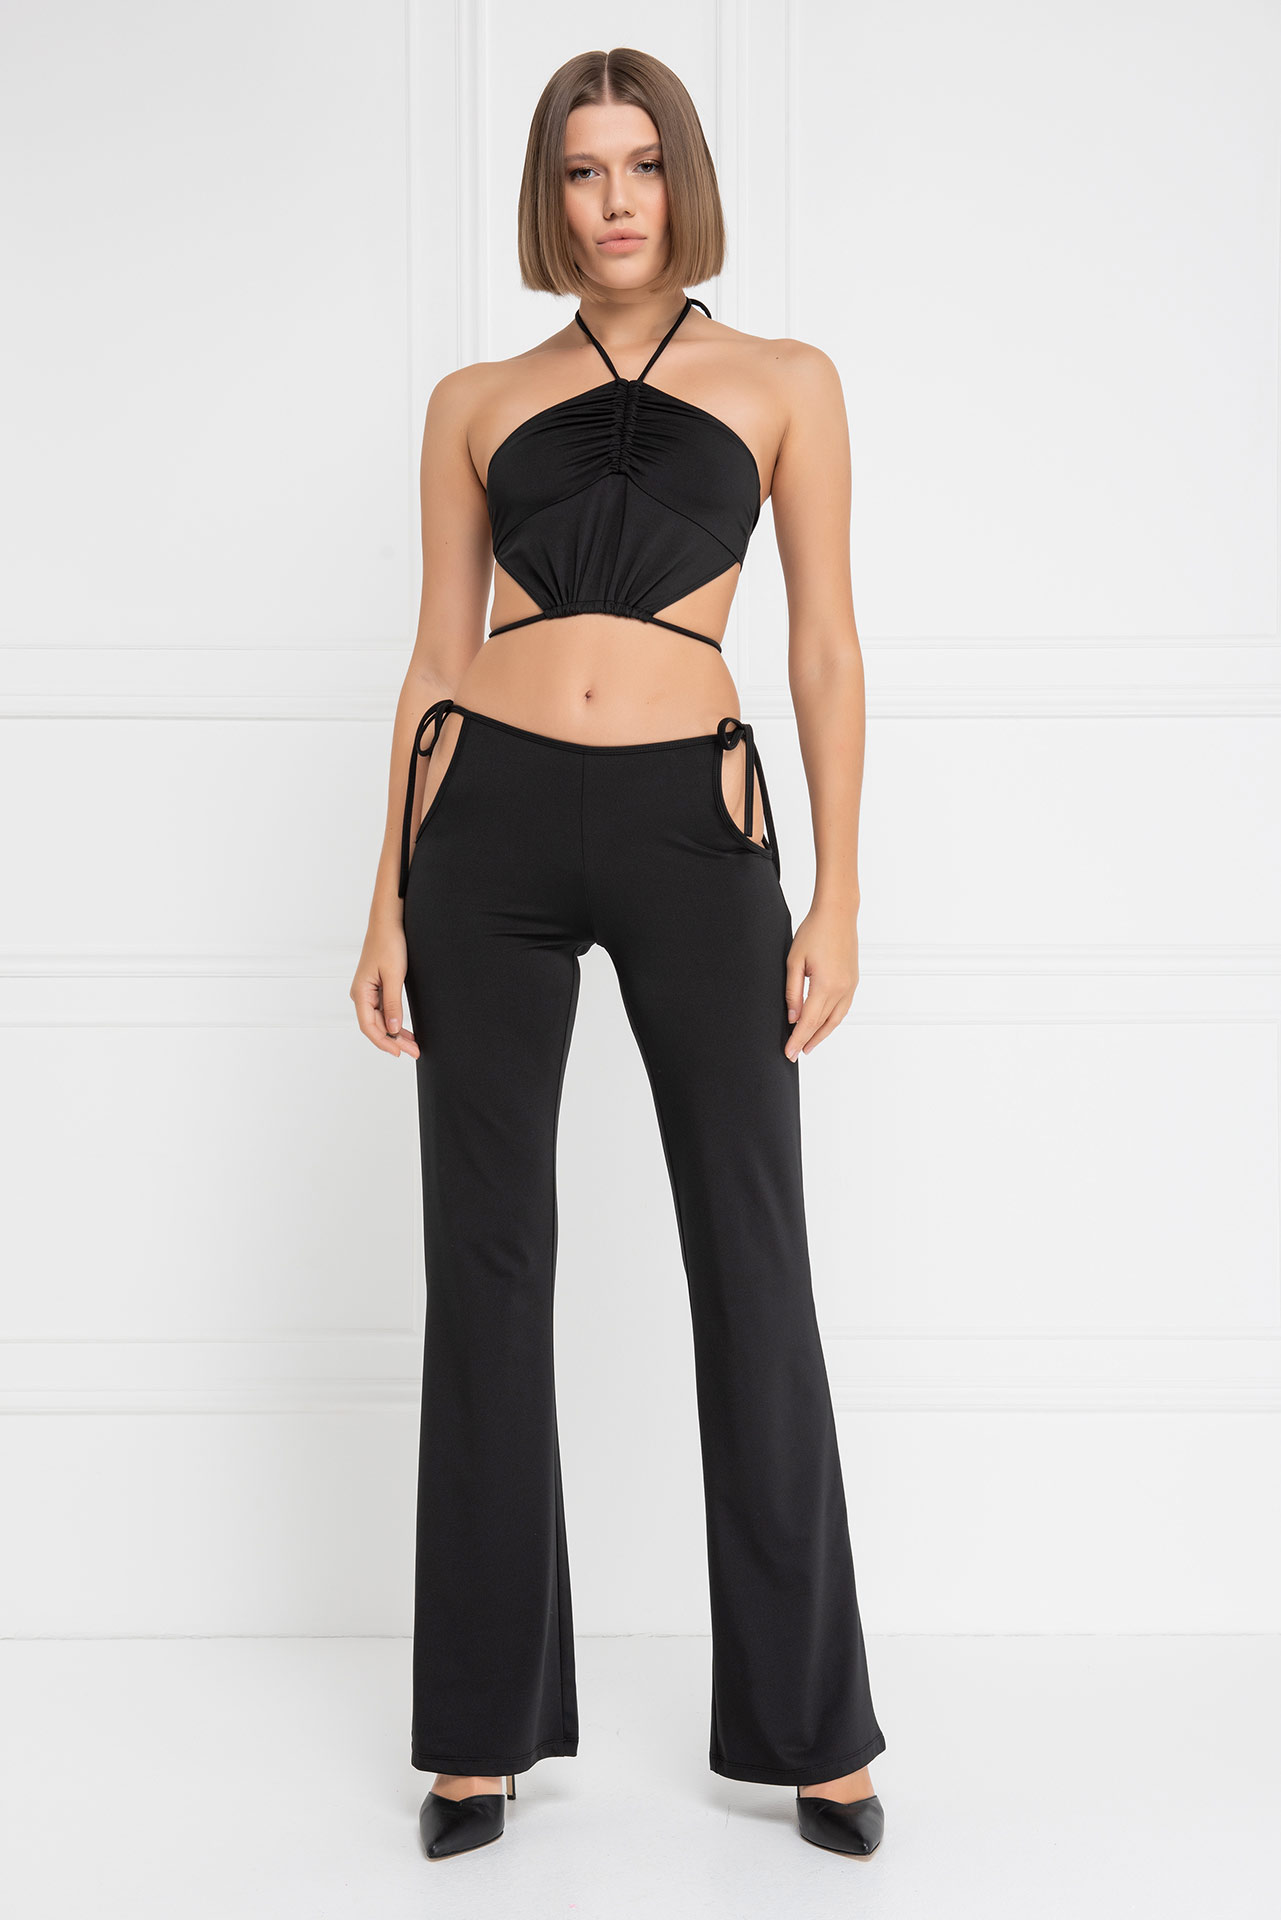 Wholesale Black Strappy Crop Cami & Cut Out Pants Set